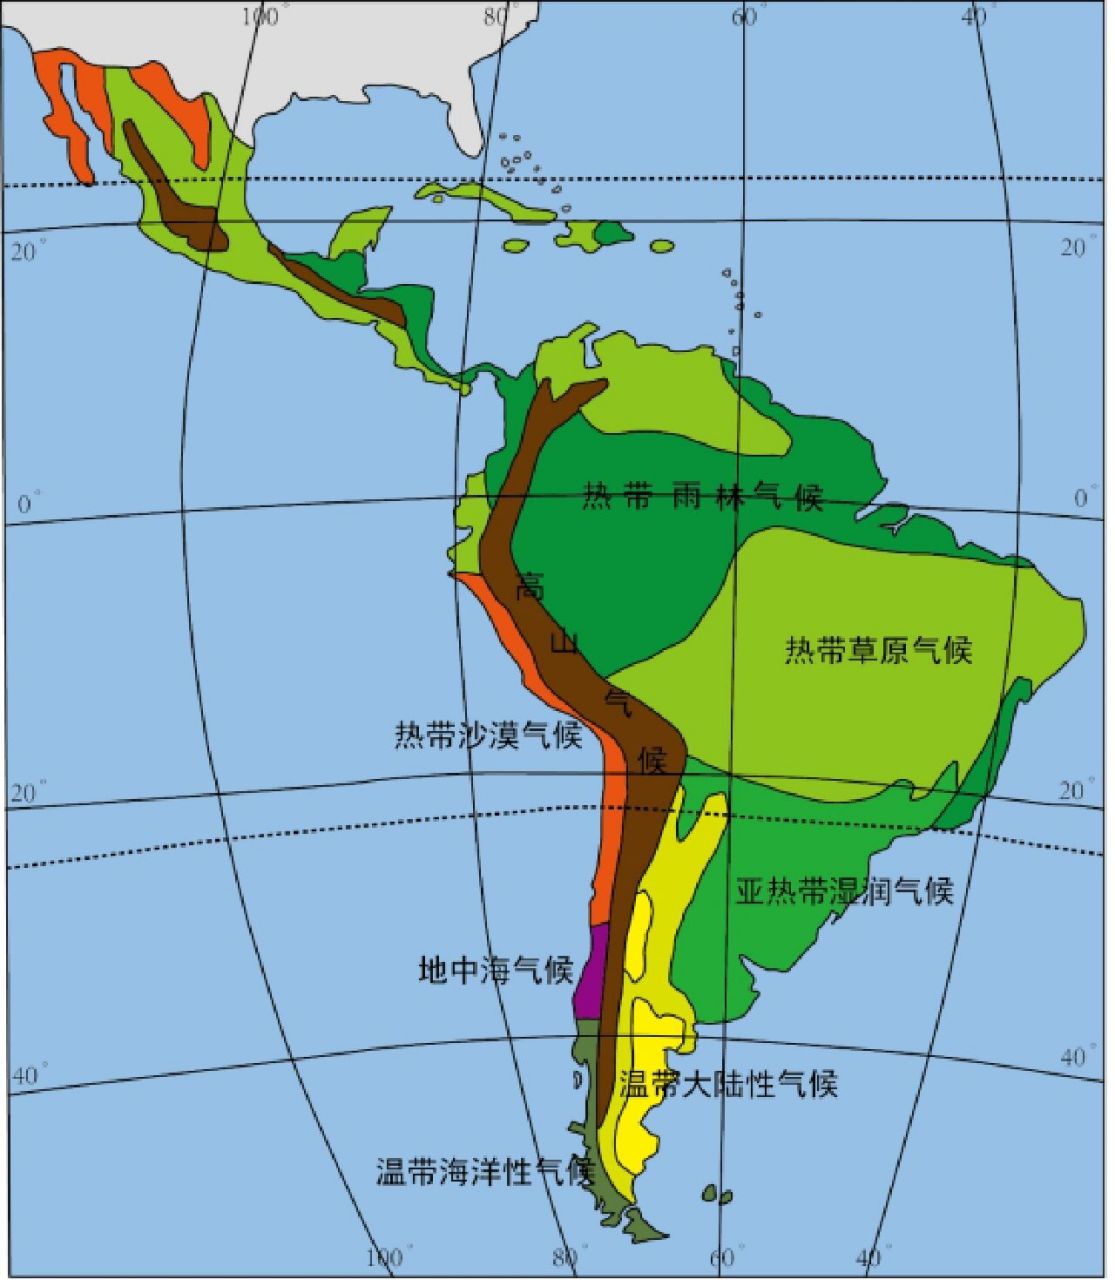 学习方法 背南美洲的气候分布图 看图2能说出数字代表什么气候类型